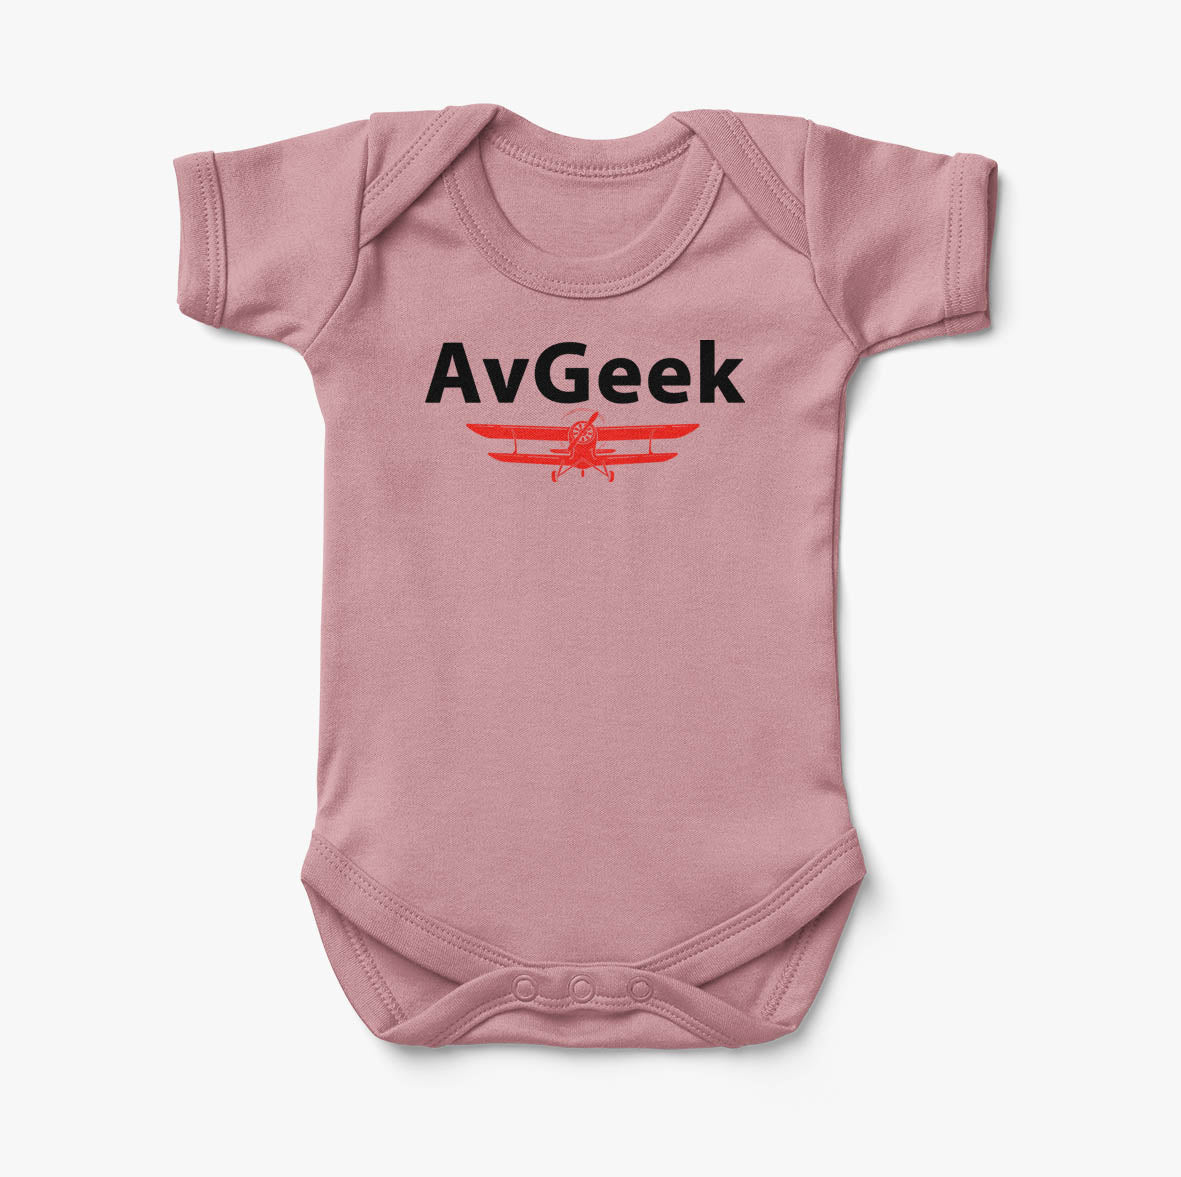 Avgeek Designed Baby Bodysuits